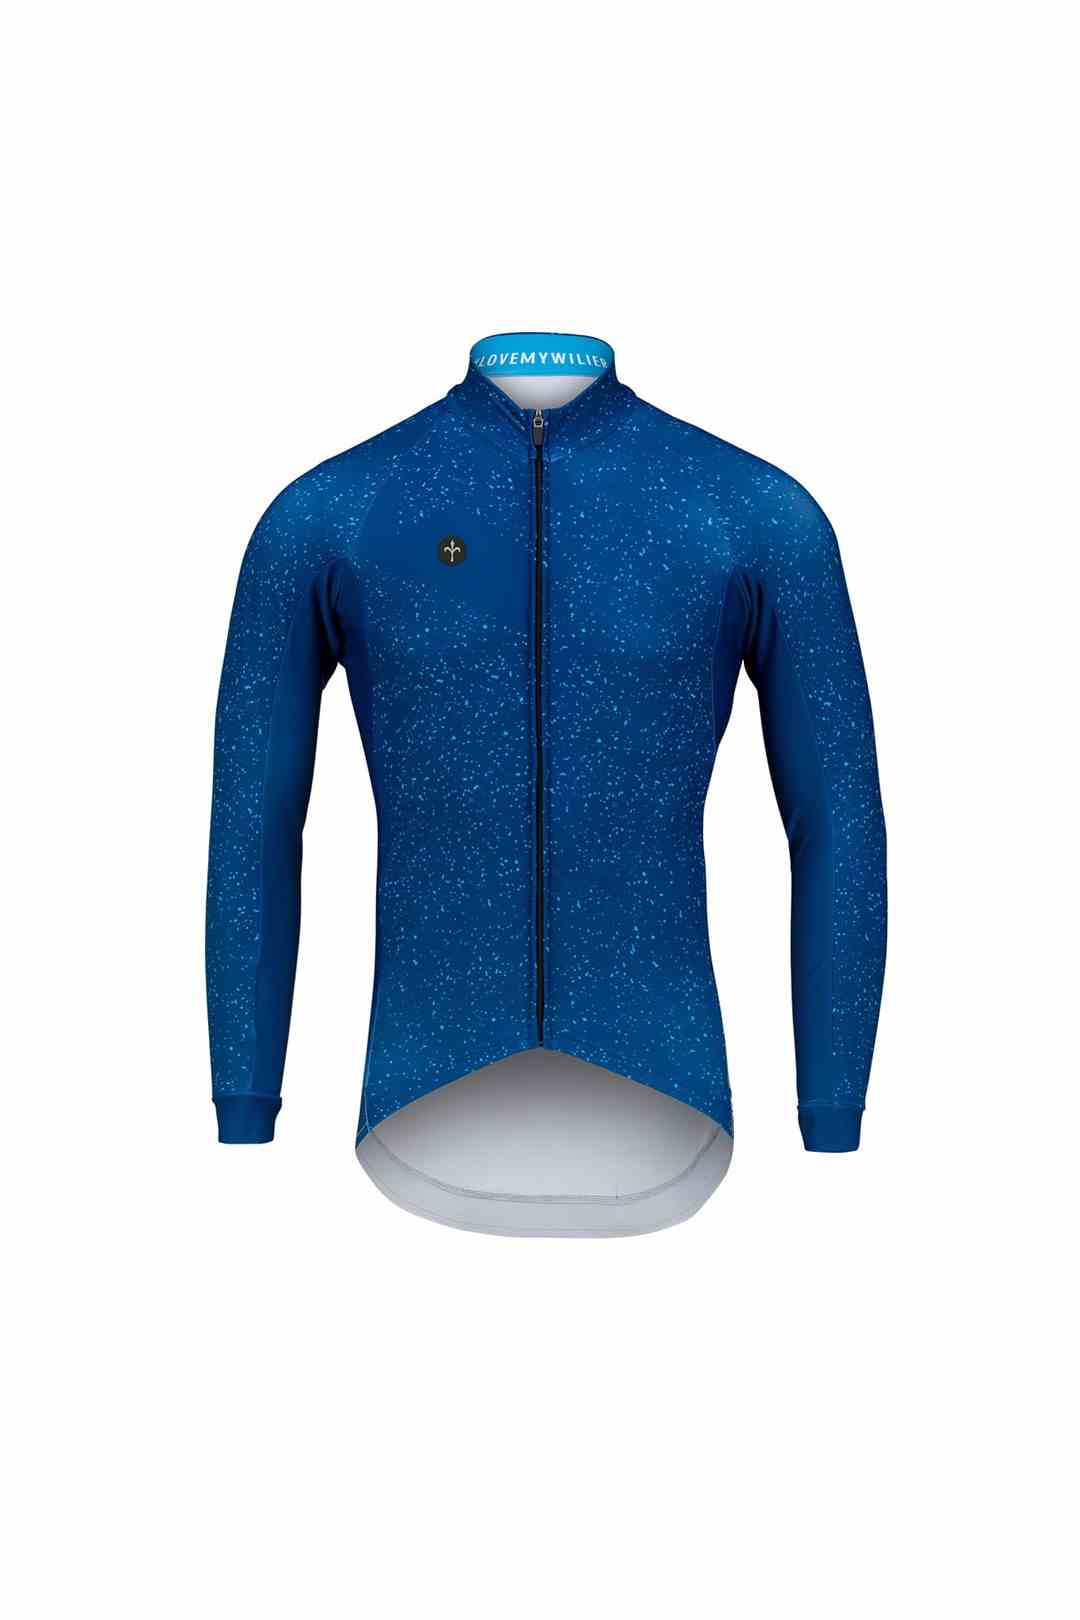 Bluza rowerowa zimowa Wilier MAGLIA KOSMOS BLUE  XL 